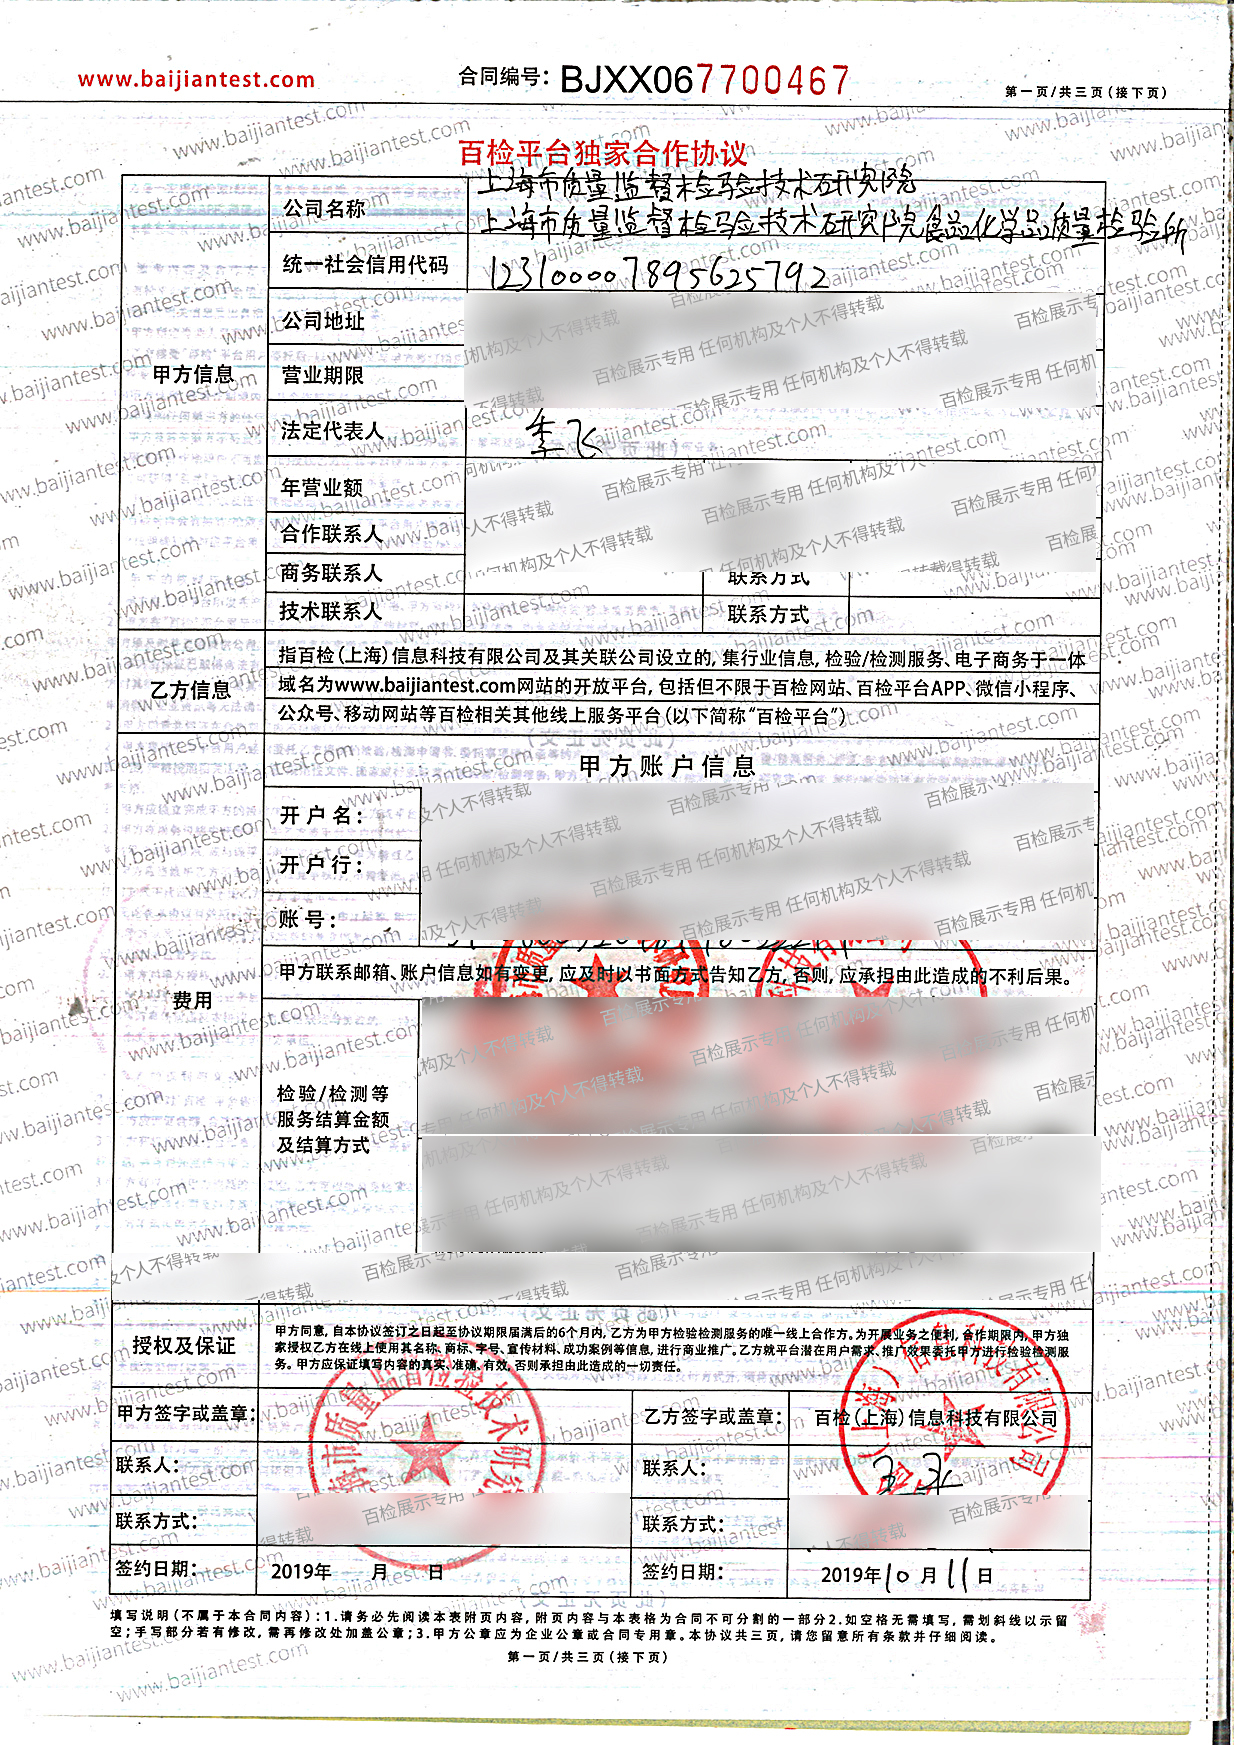 上海市质量监督检验技术研究院食品化学品质量检验所